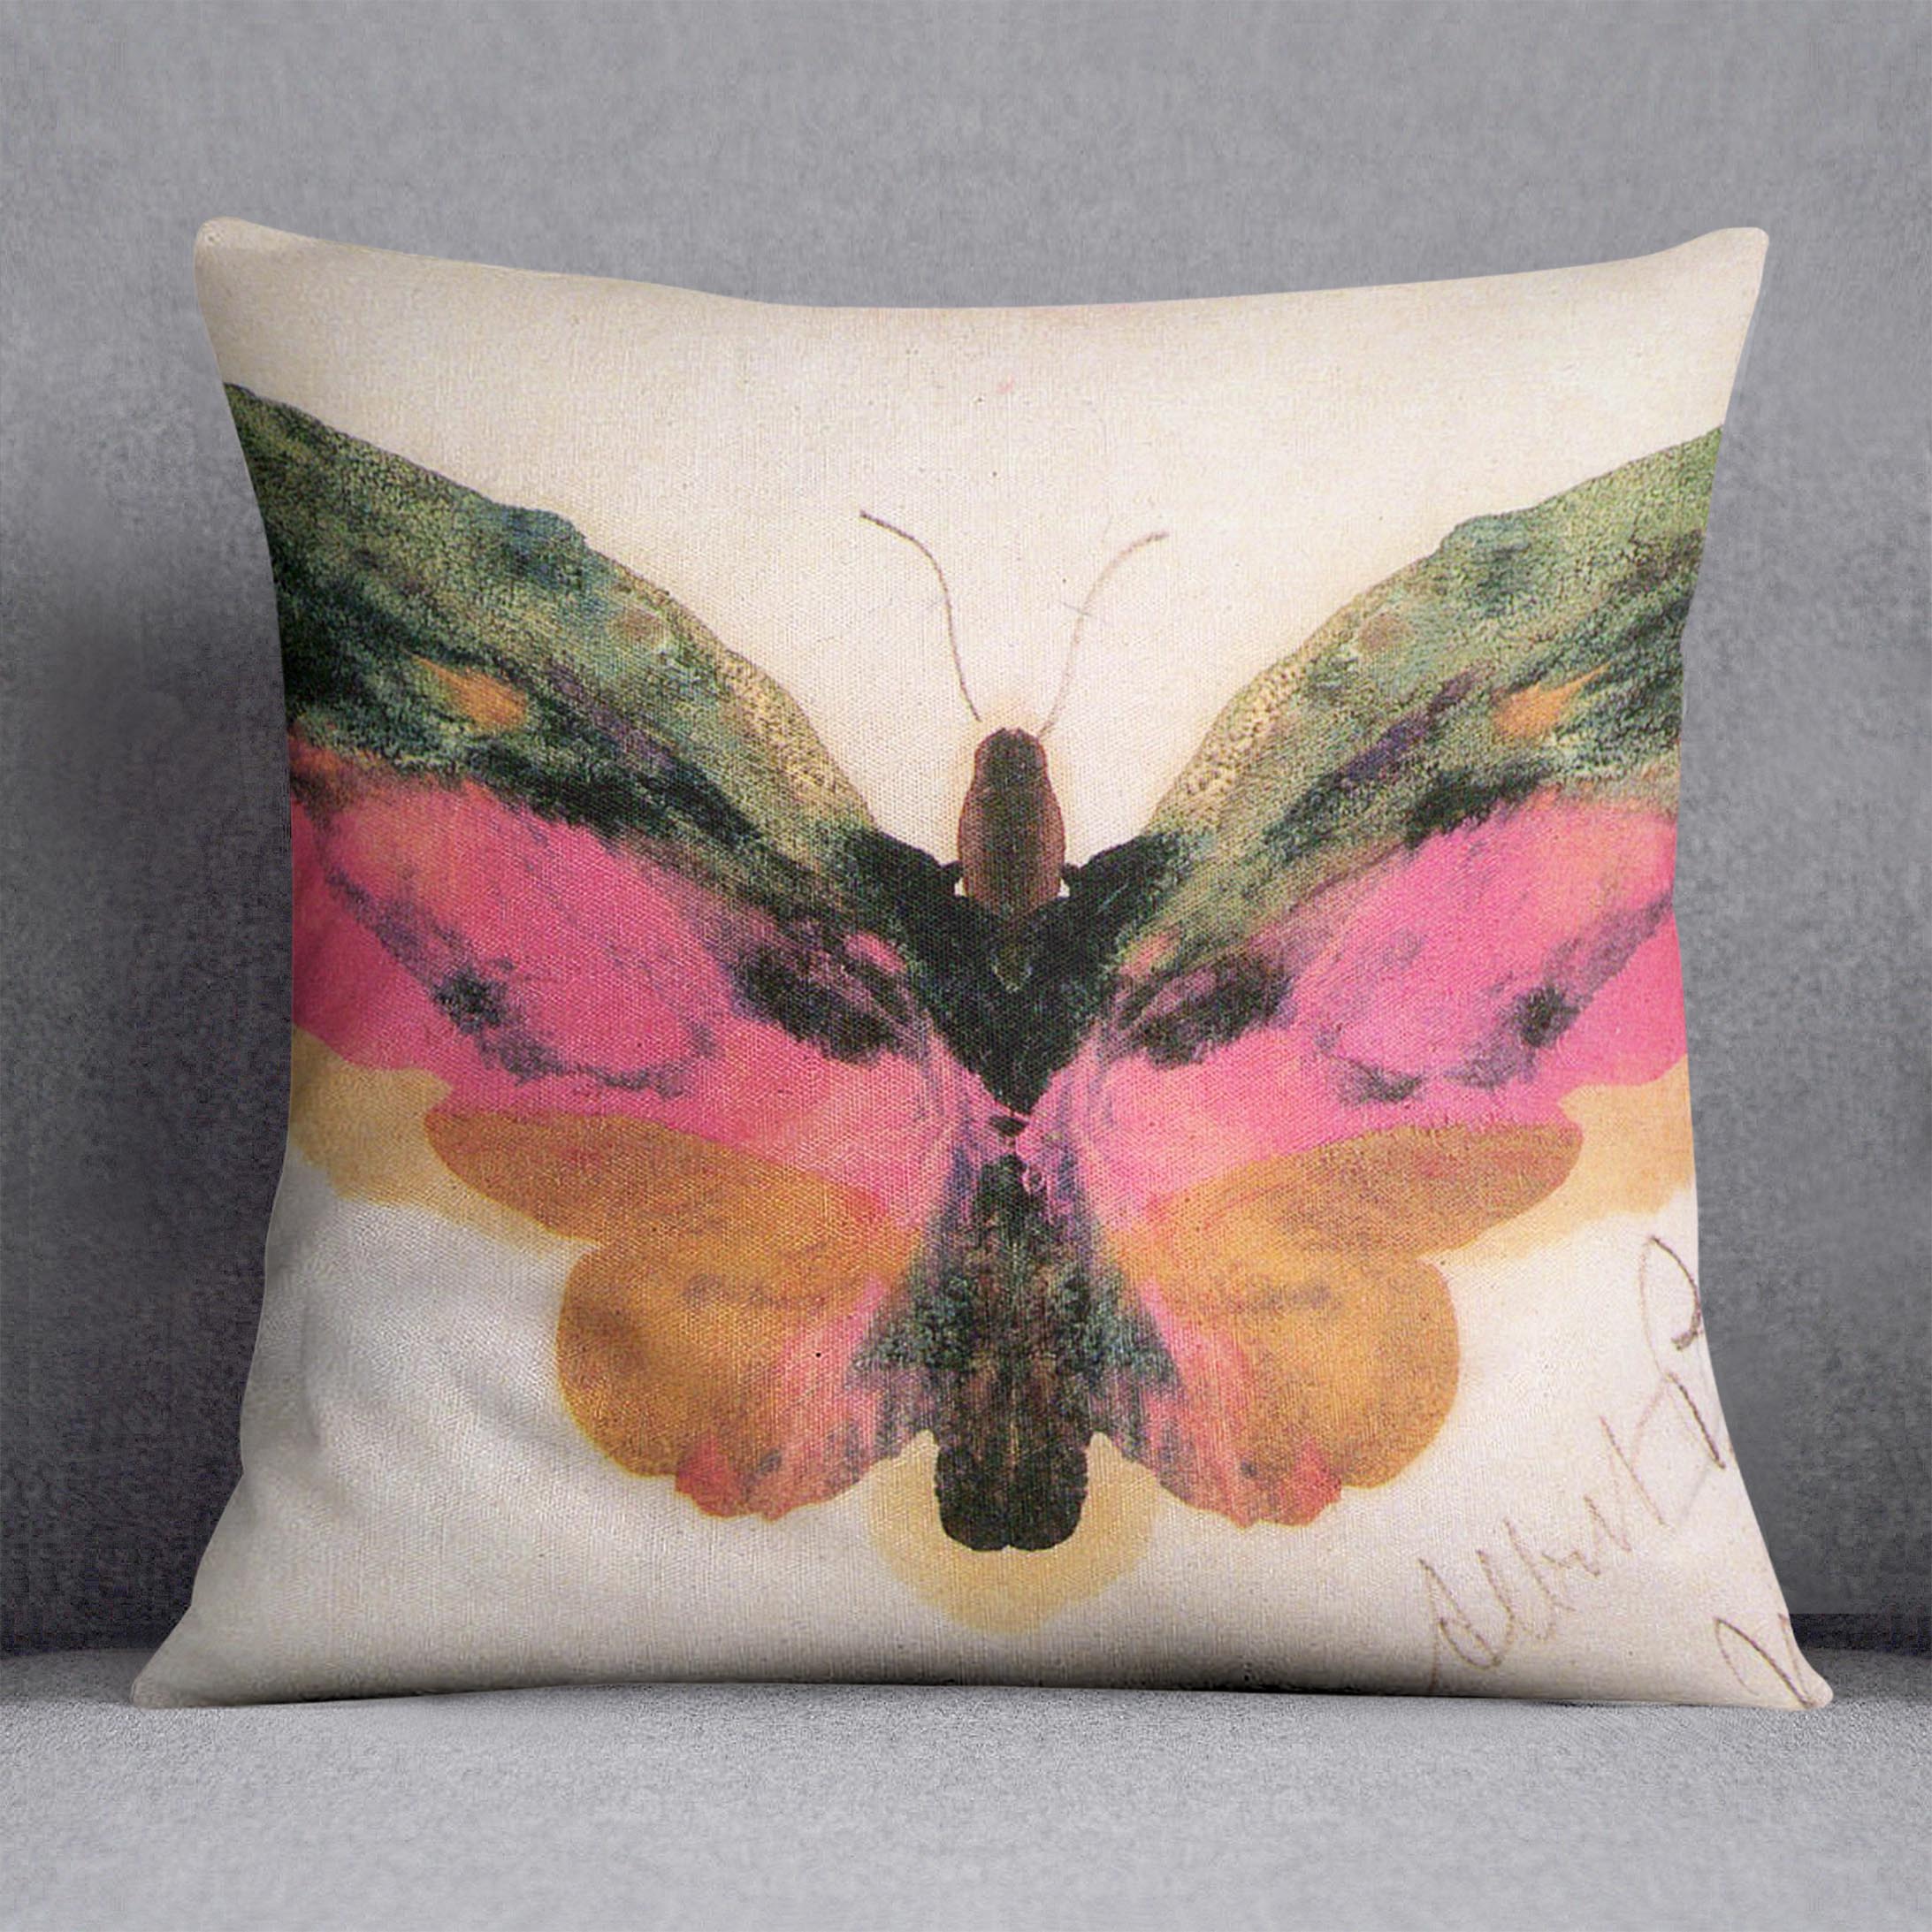 Butterfly by Bierstadt Cushion - Canvas Art Rocks - 1